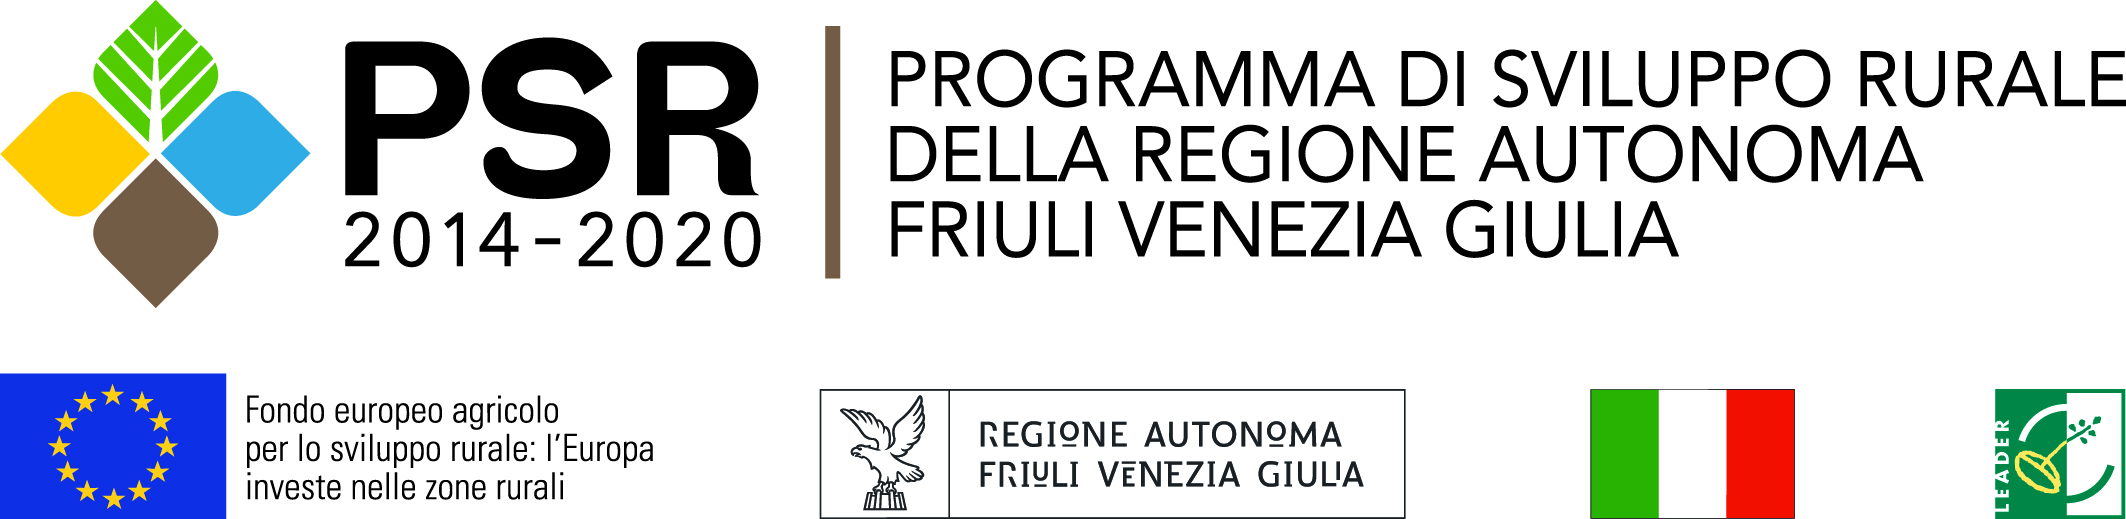 PSR 2014-2020 Programma di Sviluppo Rurale della Regione Autonoma Friuli Venezia Giulia